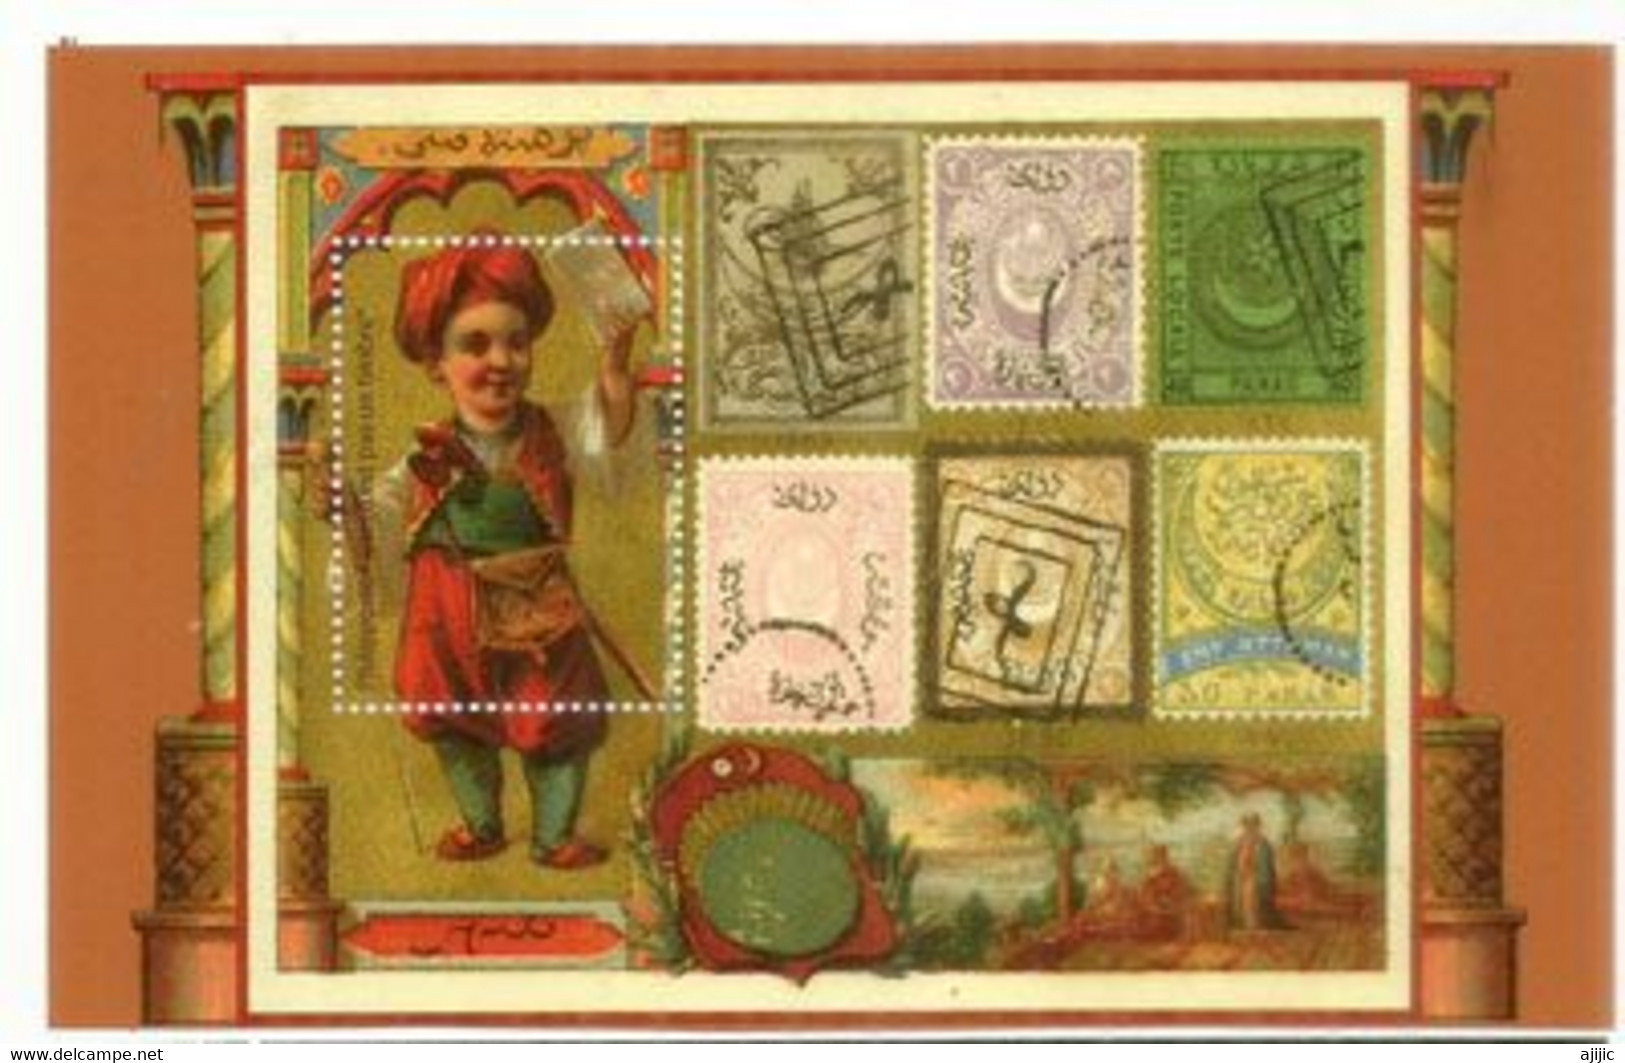 Service Postal France Avec Empire Ottoman  (vignette)   Postdienst Frankreich Mit Osmanischem Reich (Vignette) - Nuevos